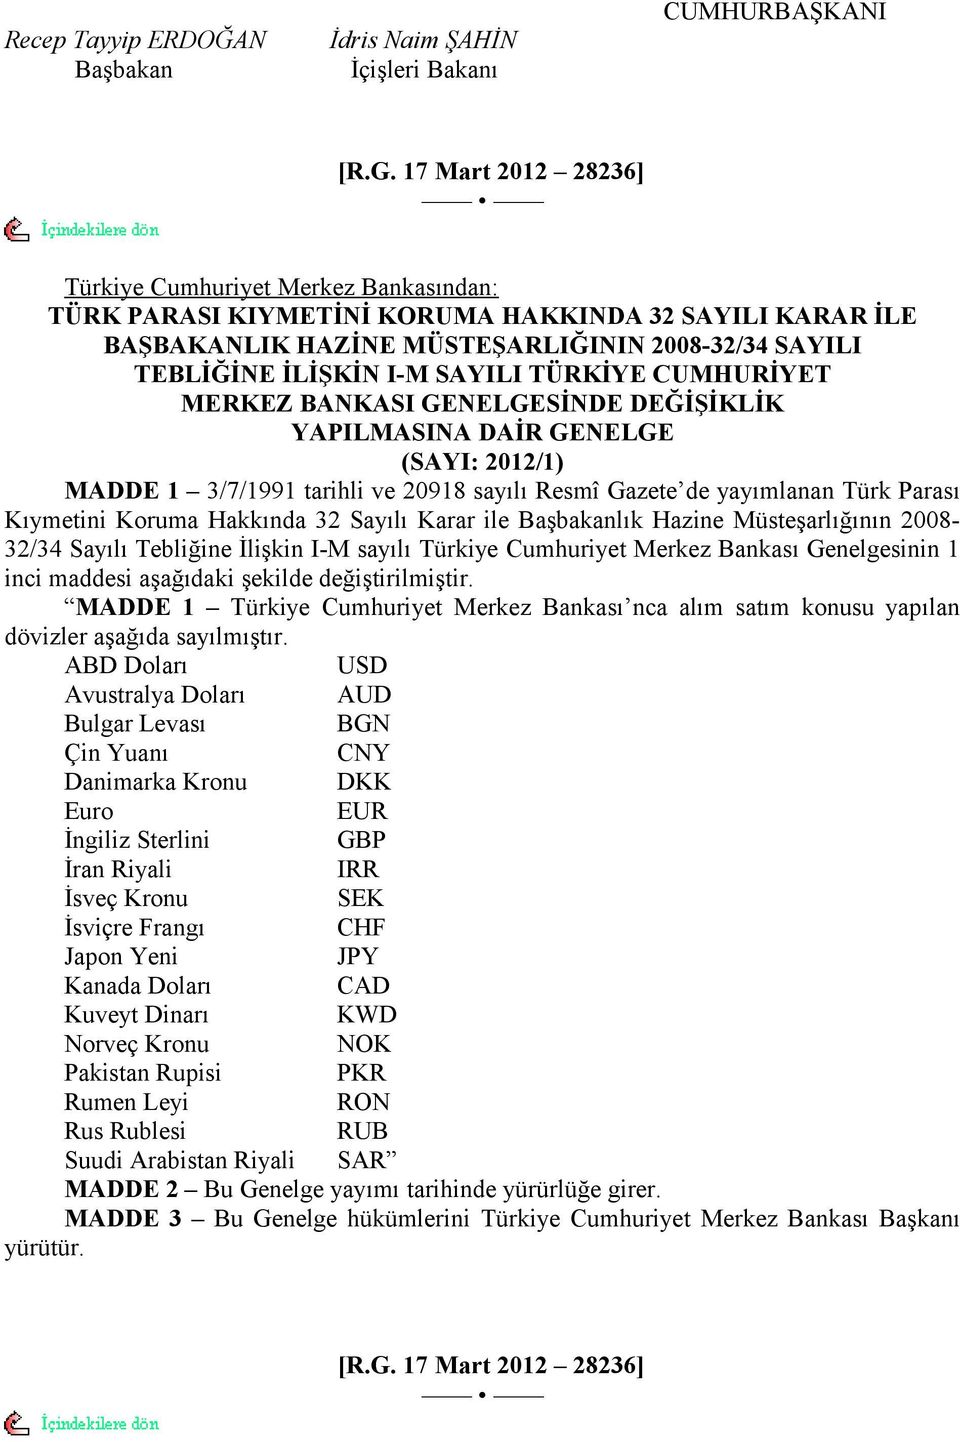 DĞİŞİKLİK YPILMSIN DİR GNLG (SYI: 0/) MDD /7/99 tarihli ve 098 sayılı Resmî Gazete de yayımlanan Türk Parası Kıymetini Koruma Hakkında Sayılı Karar ile Başbakanlık Hazine Müsteşarlığının 008/ Sayılı